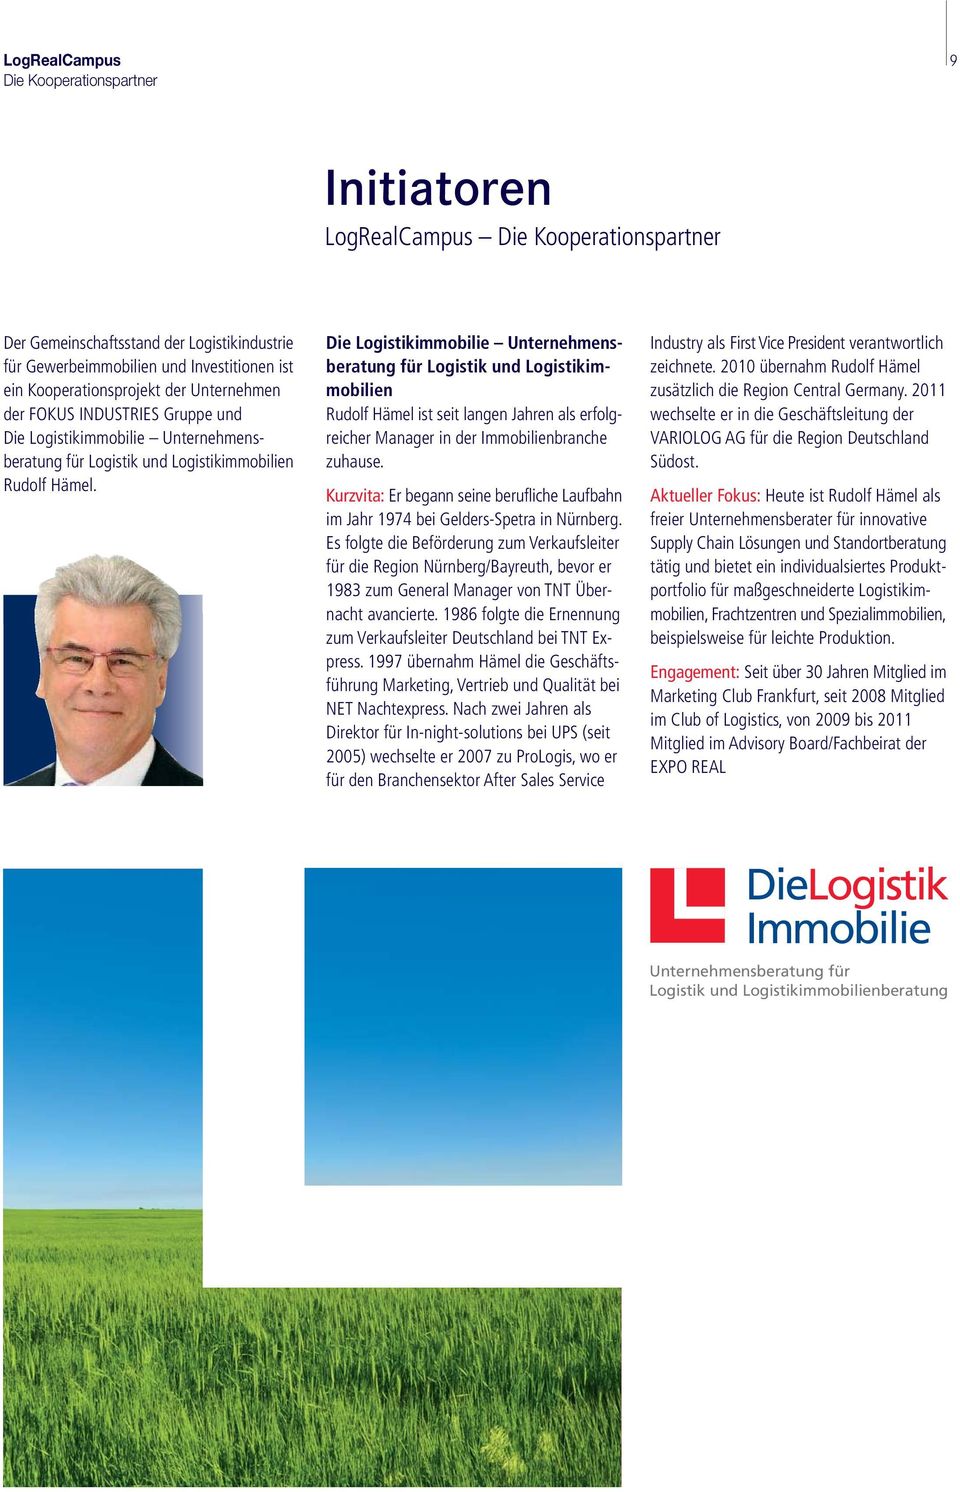 Die Logistikimmobilie Unternehmensberatung für Logistik und Logistikimmobilien Rudolf Hämel ist seit langen Jahren als erfolgreicher Manager in der Immobilienbranche zuhause.